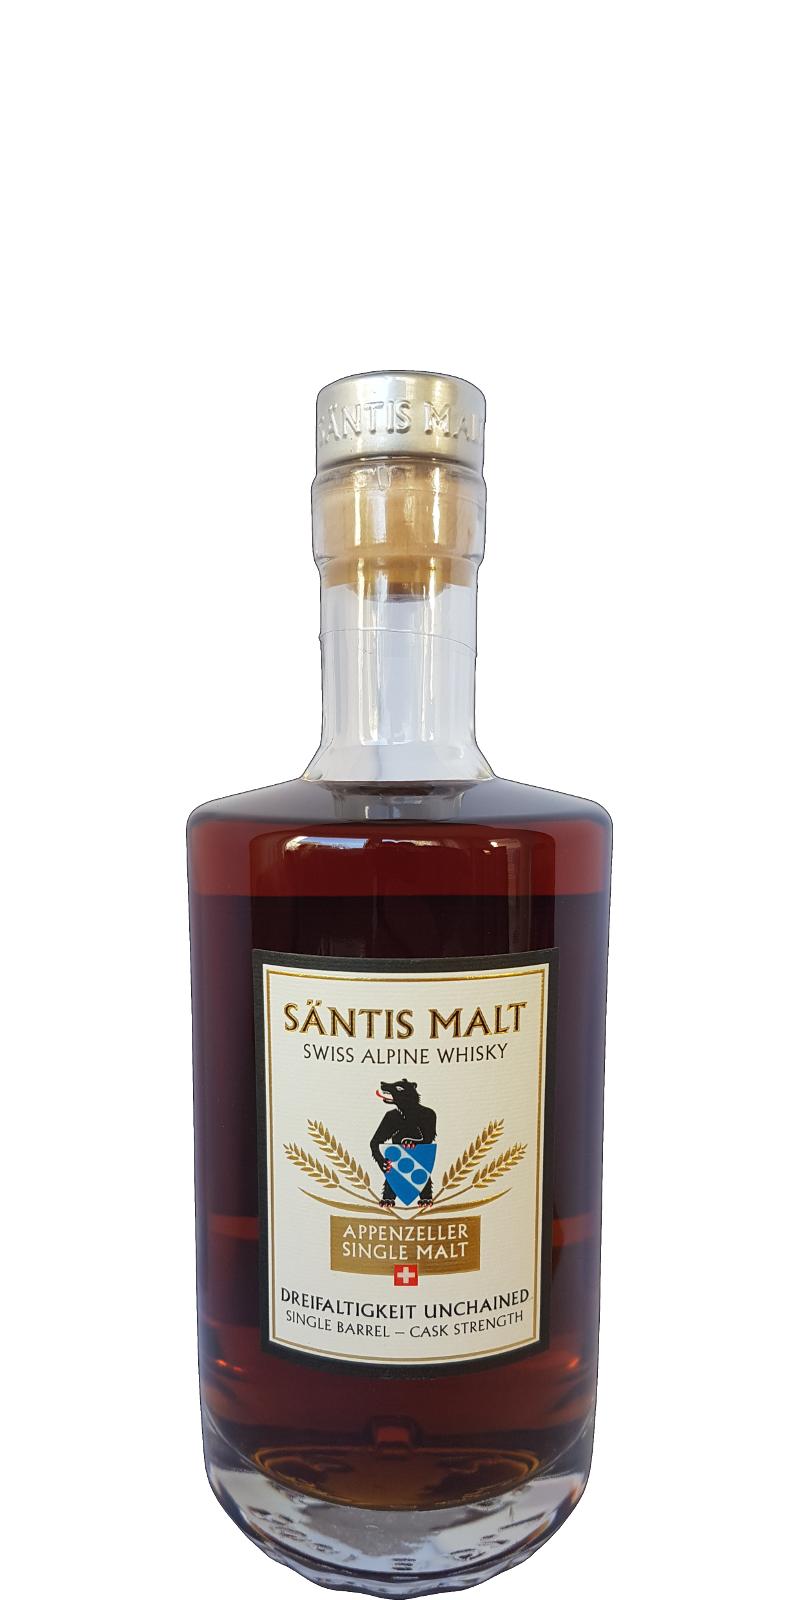 Santis Malt Dreifaltigkeit Unchained Beer Barrel whisky.de Exklusiv 64.3% 500ml